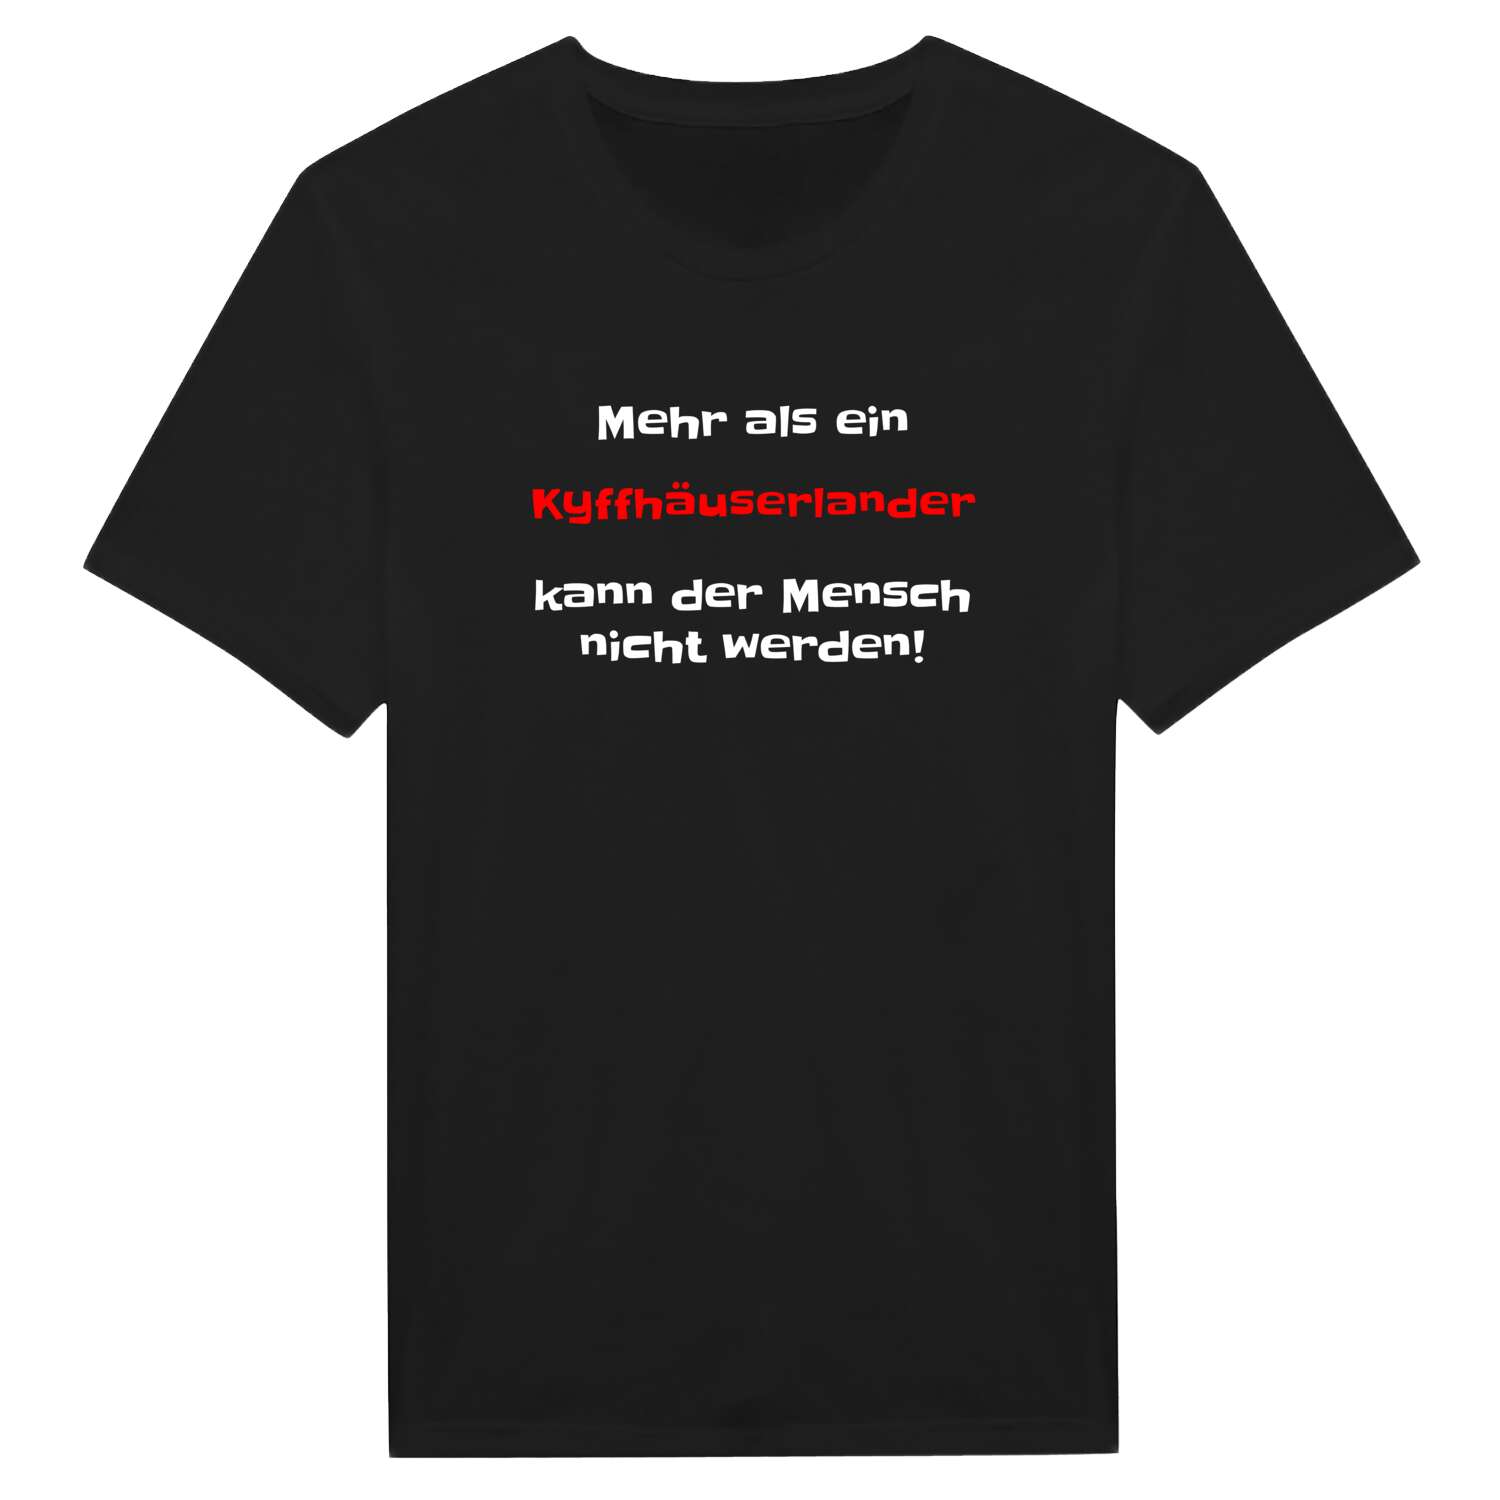 Kyffhäuserland T-Shirt »Mehr als ein«